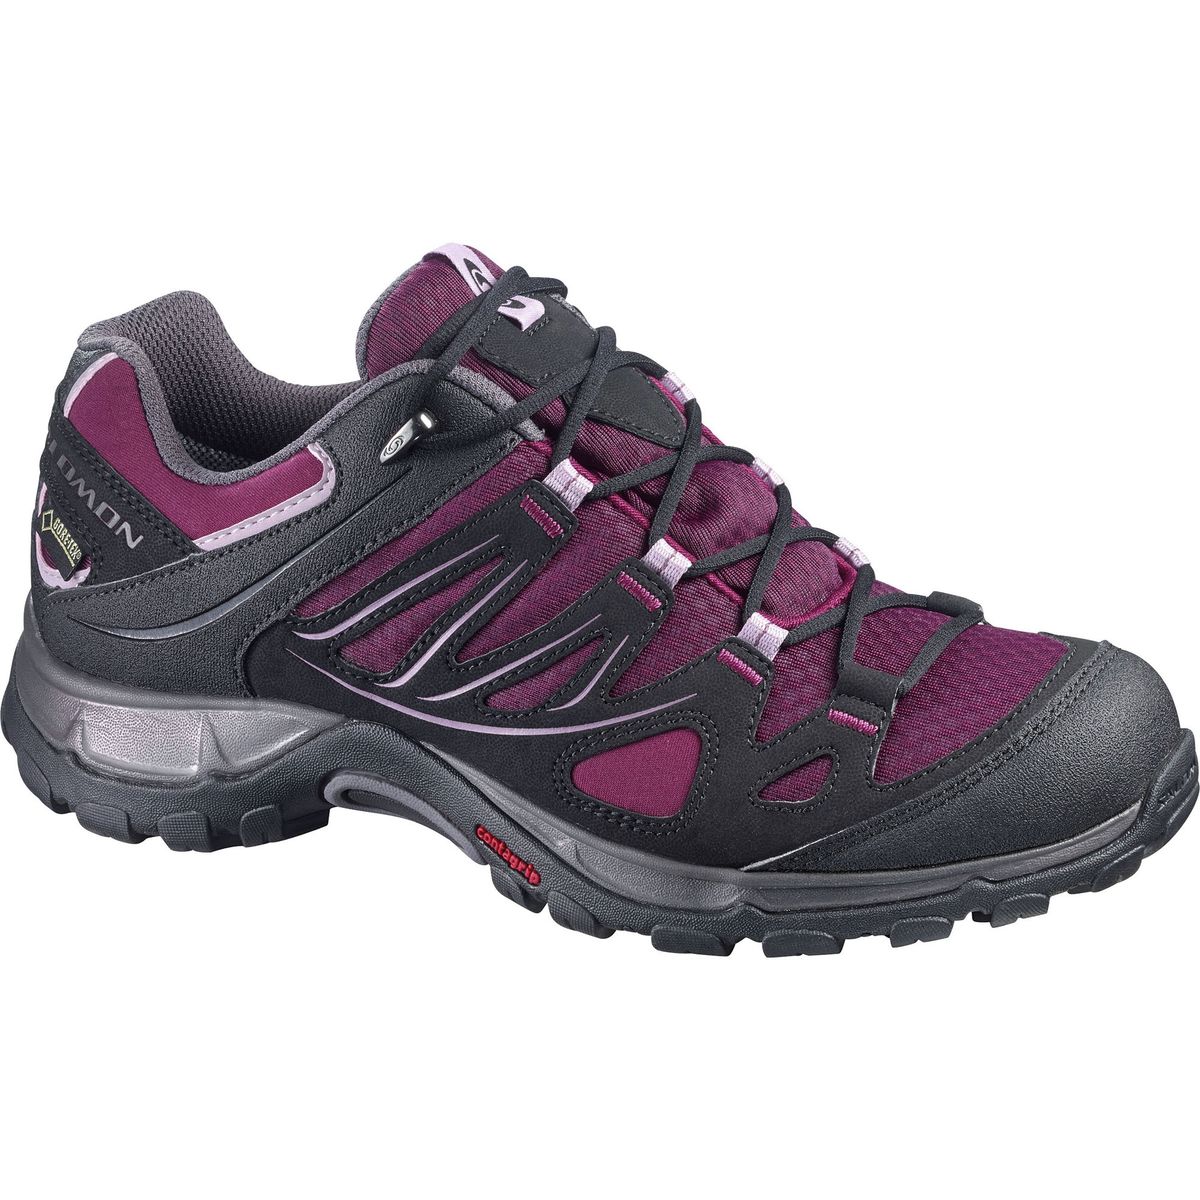 Salomon Ellipse GTX Hiking Shoe - Women's - Footwear